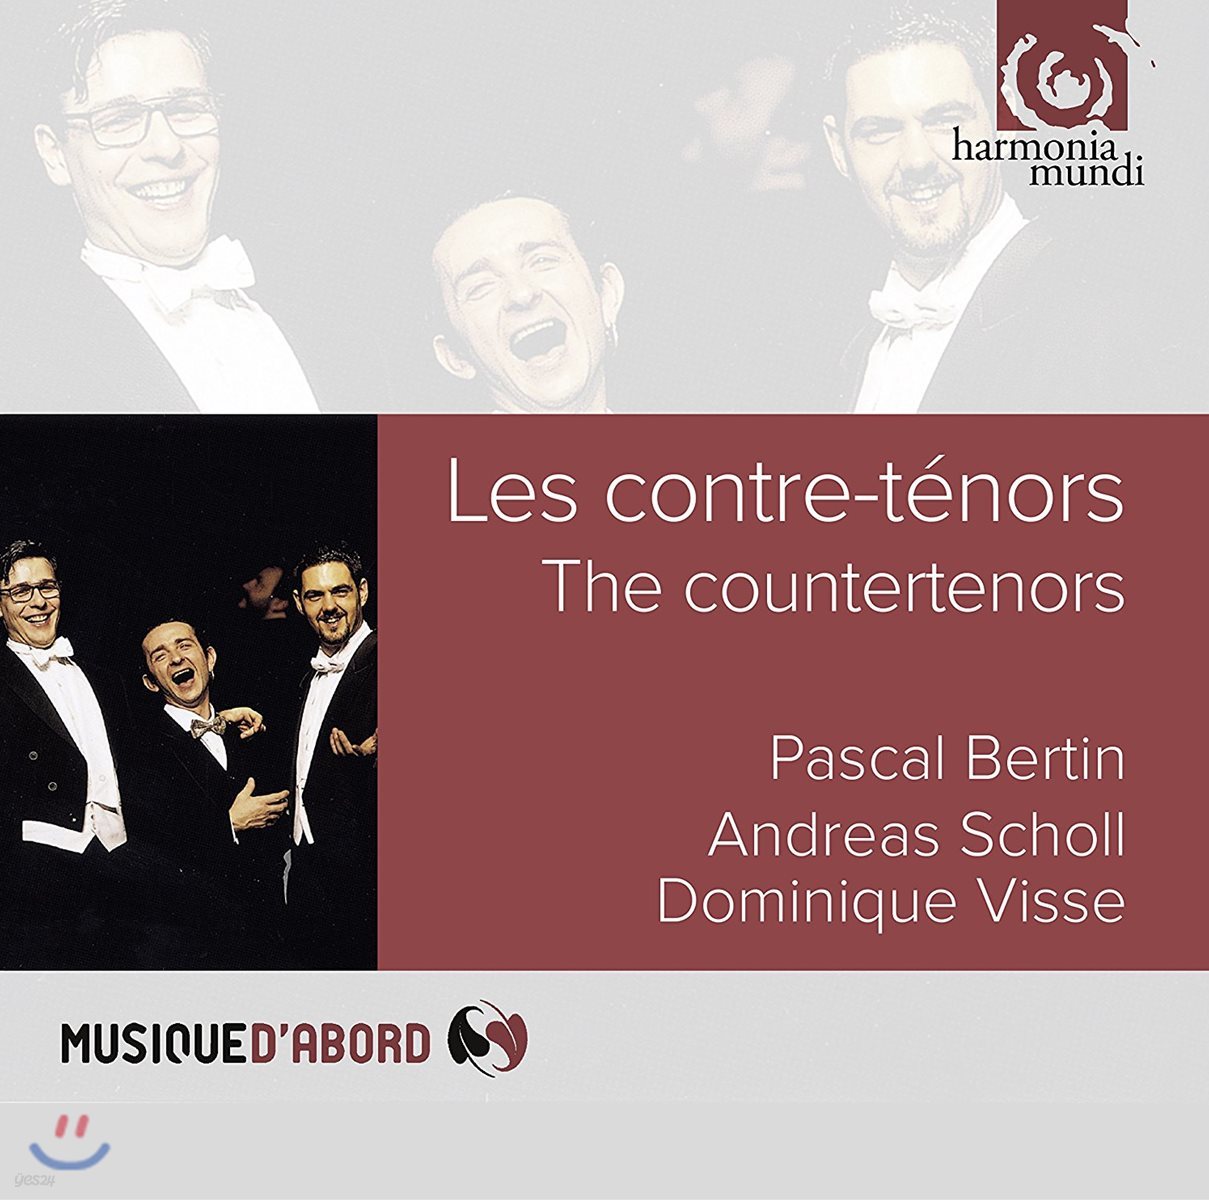 Pascal Bertin / Andreas Scholl / Dominique Visse 카운터 테너들 - 안드레아스 숄, 도미니크 비쎄, 파스칼 베르탱 (Les Contre-Tenors [The Countertenors])